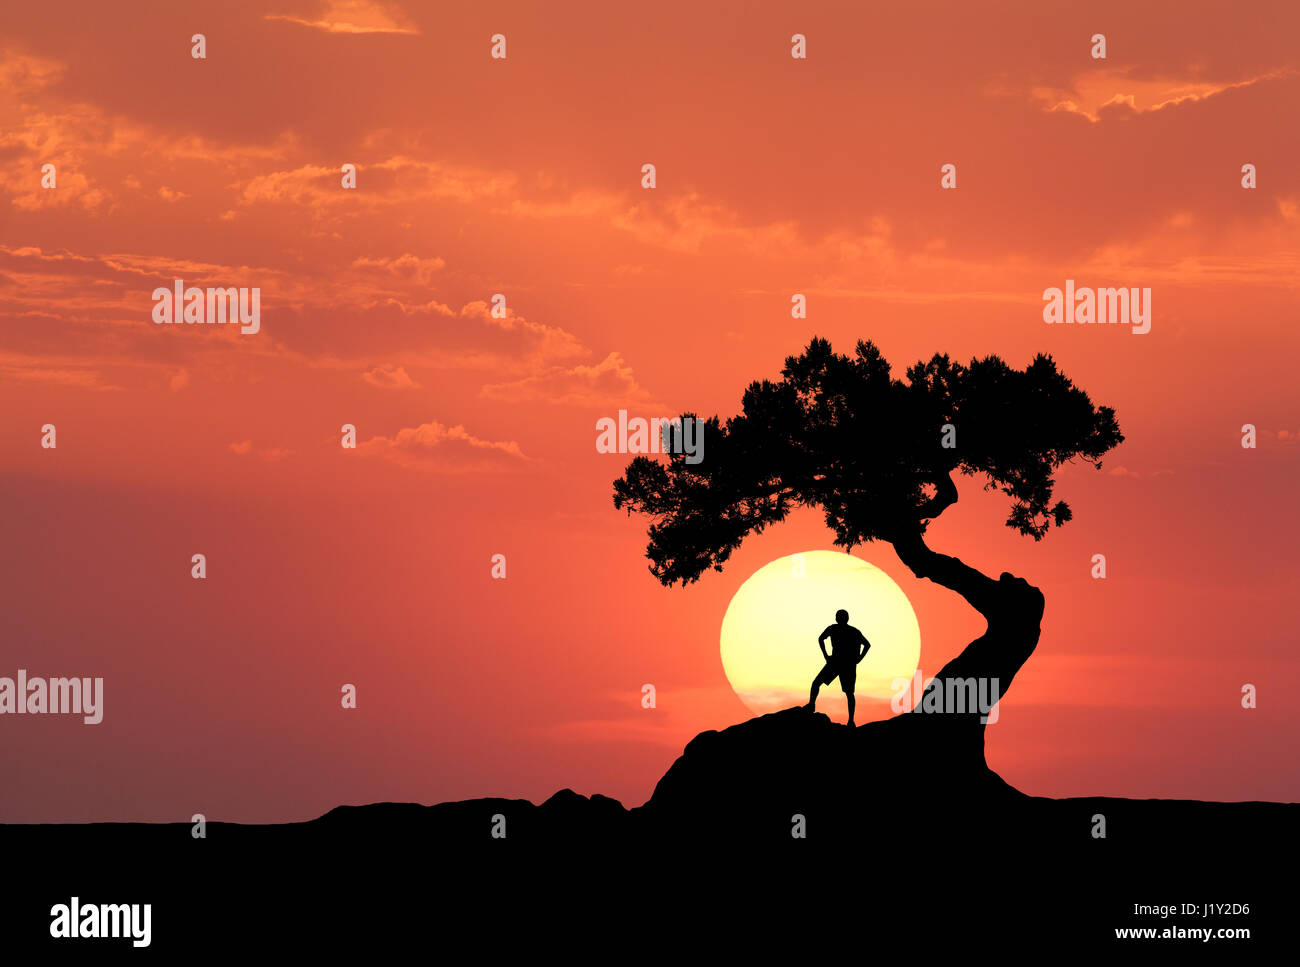 Mann unter dem alten Baum auf dem Hintergrund der gelben Sonne. Silhouette eines stehenden sportlichen Mannes auf den Berg und bunten orangefarbenen Himmel mit Wolken Stockfoto